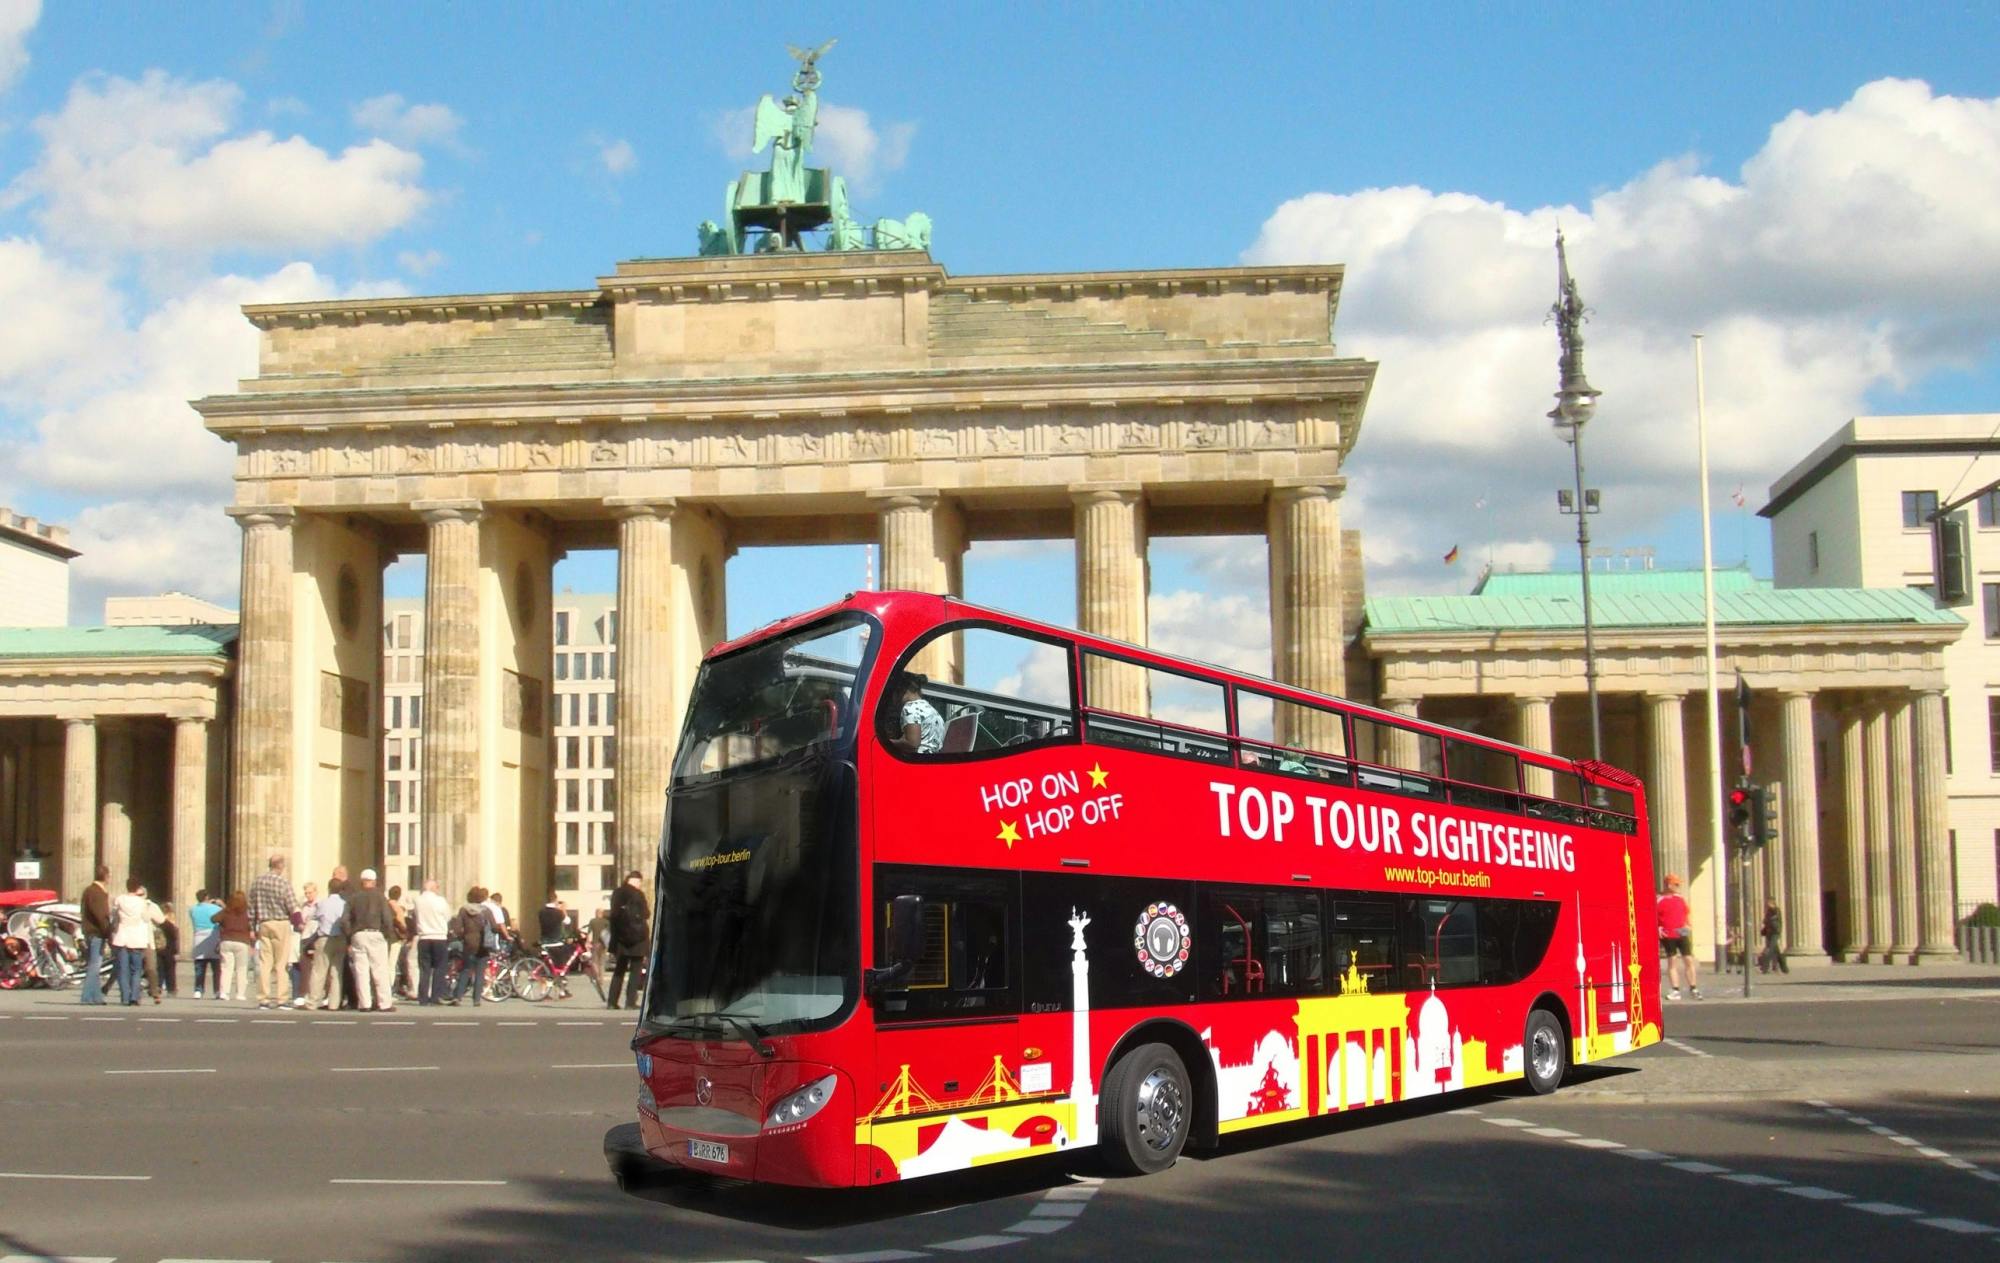 Recorrido turístico de 24 horas por Berlín con paradas libres